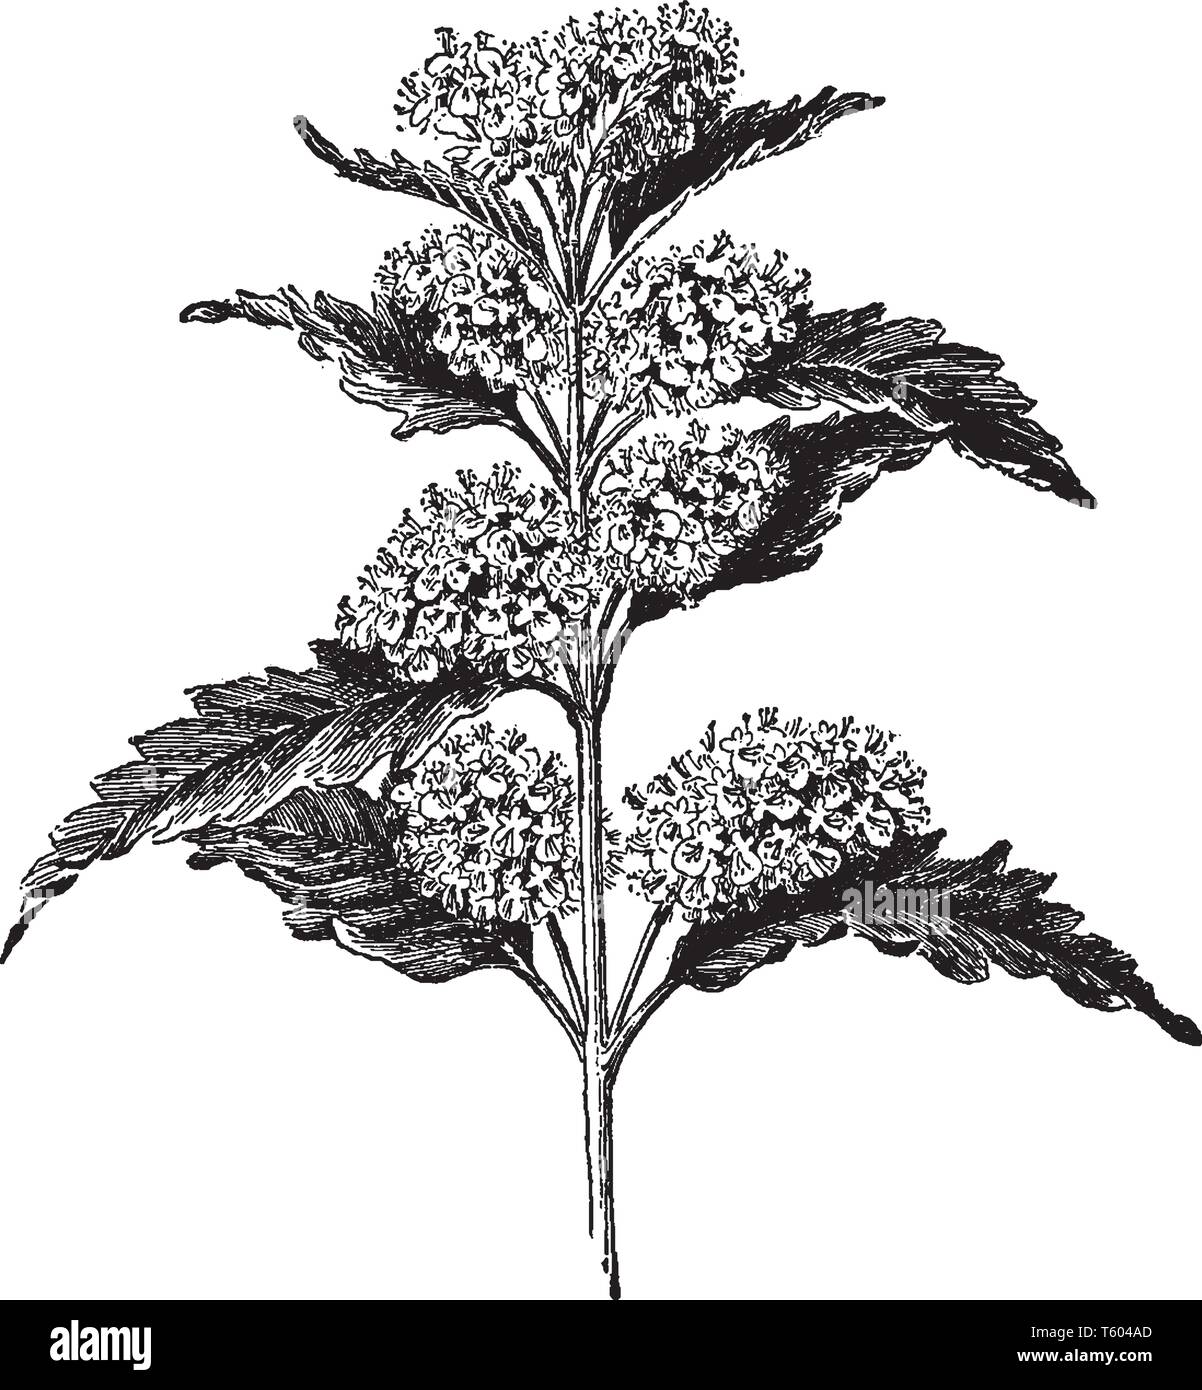 Caryopteris incana est connu sous le nom de Barbe-Bleue. C'est un arbuste à feuilles caduques, vintage dessin ou gravure illustration. Illustration de Vecteur